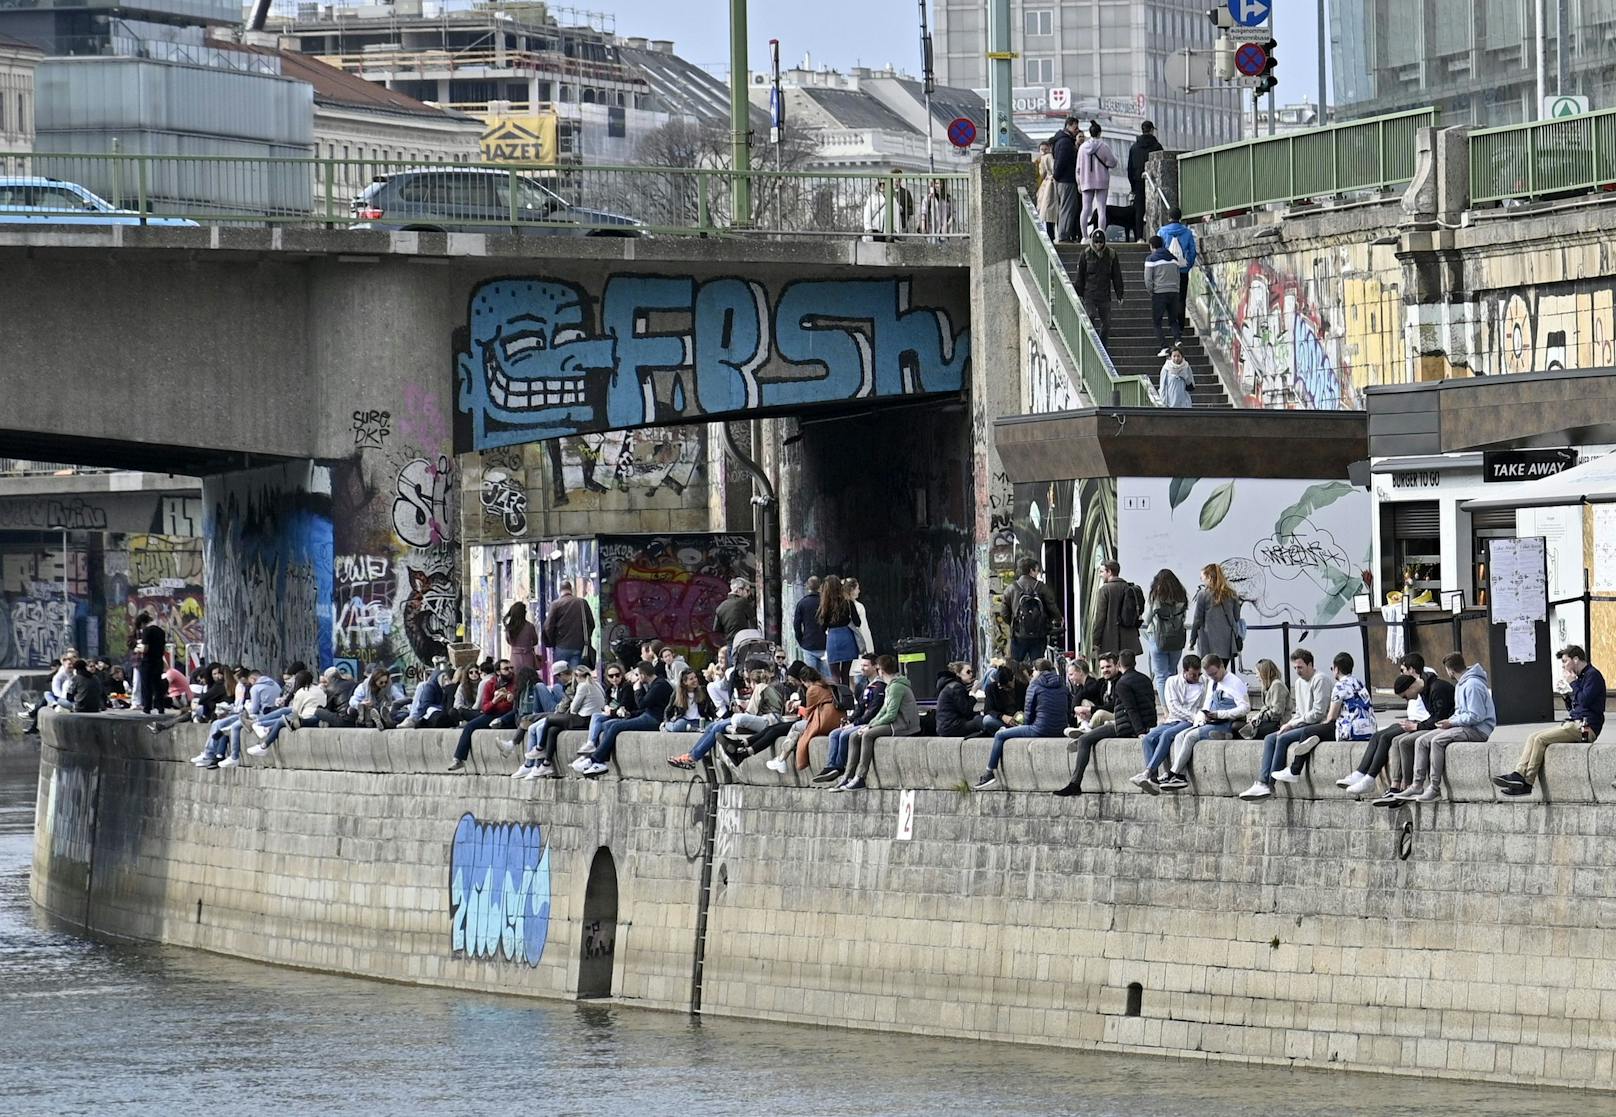 Chillen mit Freunden am Donaukanal? Wird ab der Osterruhe schwierig – und sinnvoll ist es sowieso nicht.